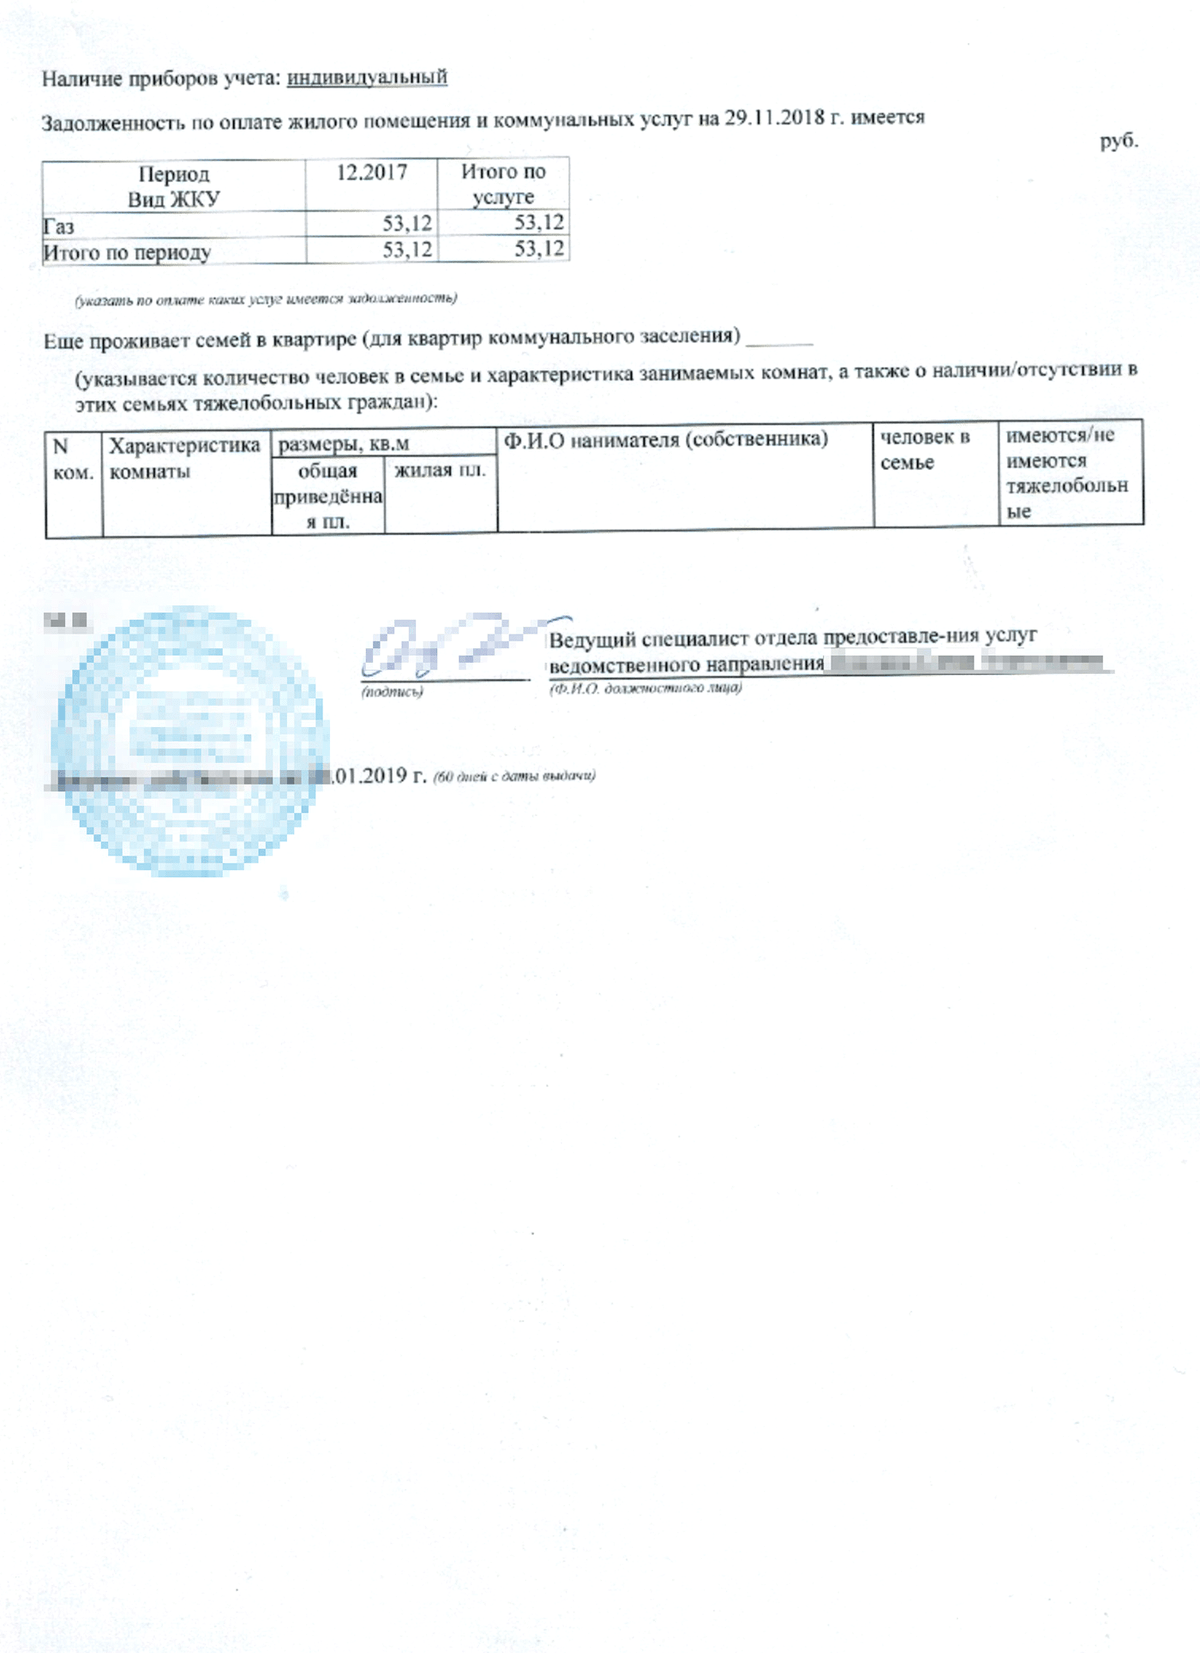 Единый жилищный документ москва